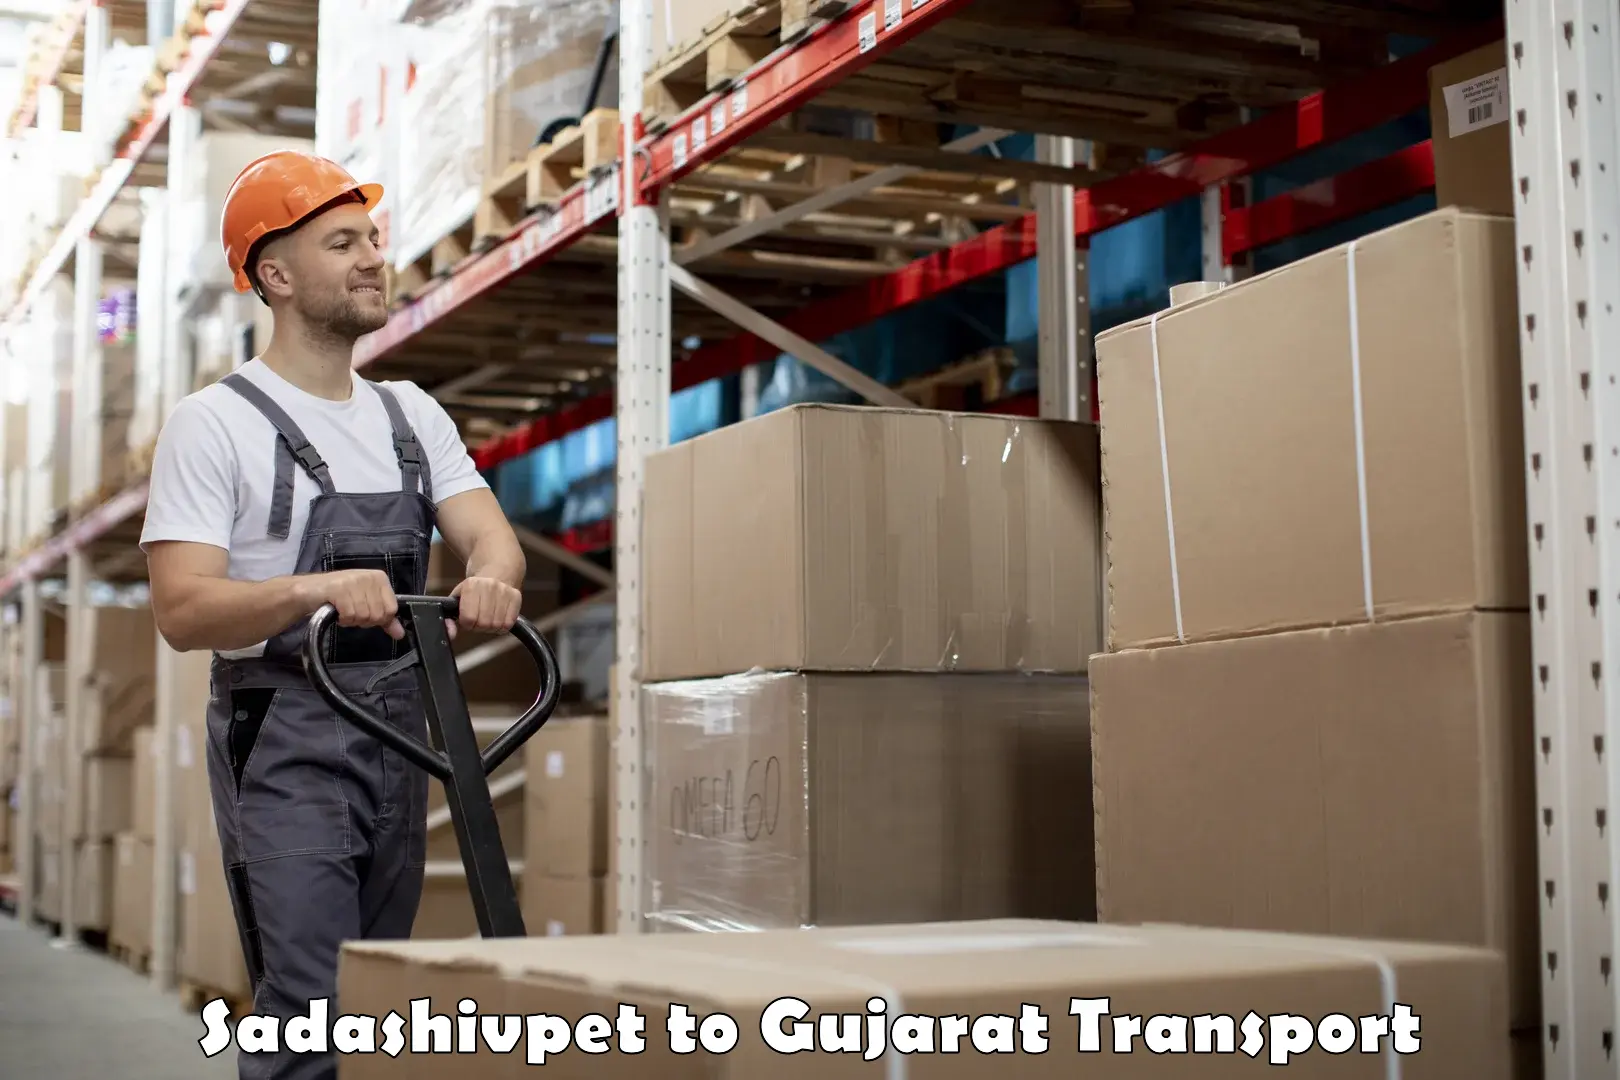 Online transport in Sadashivpet to Patan Gujarat